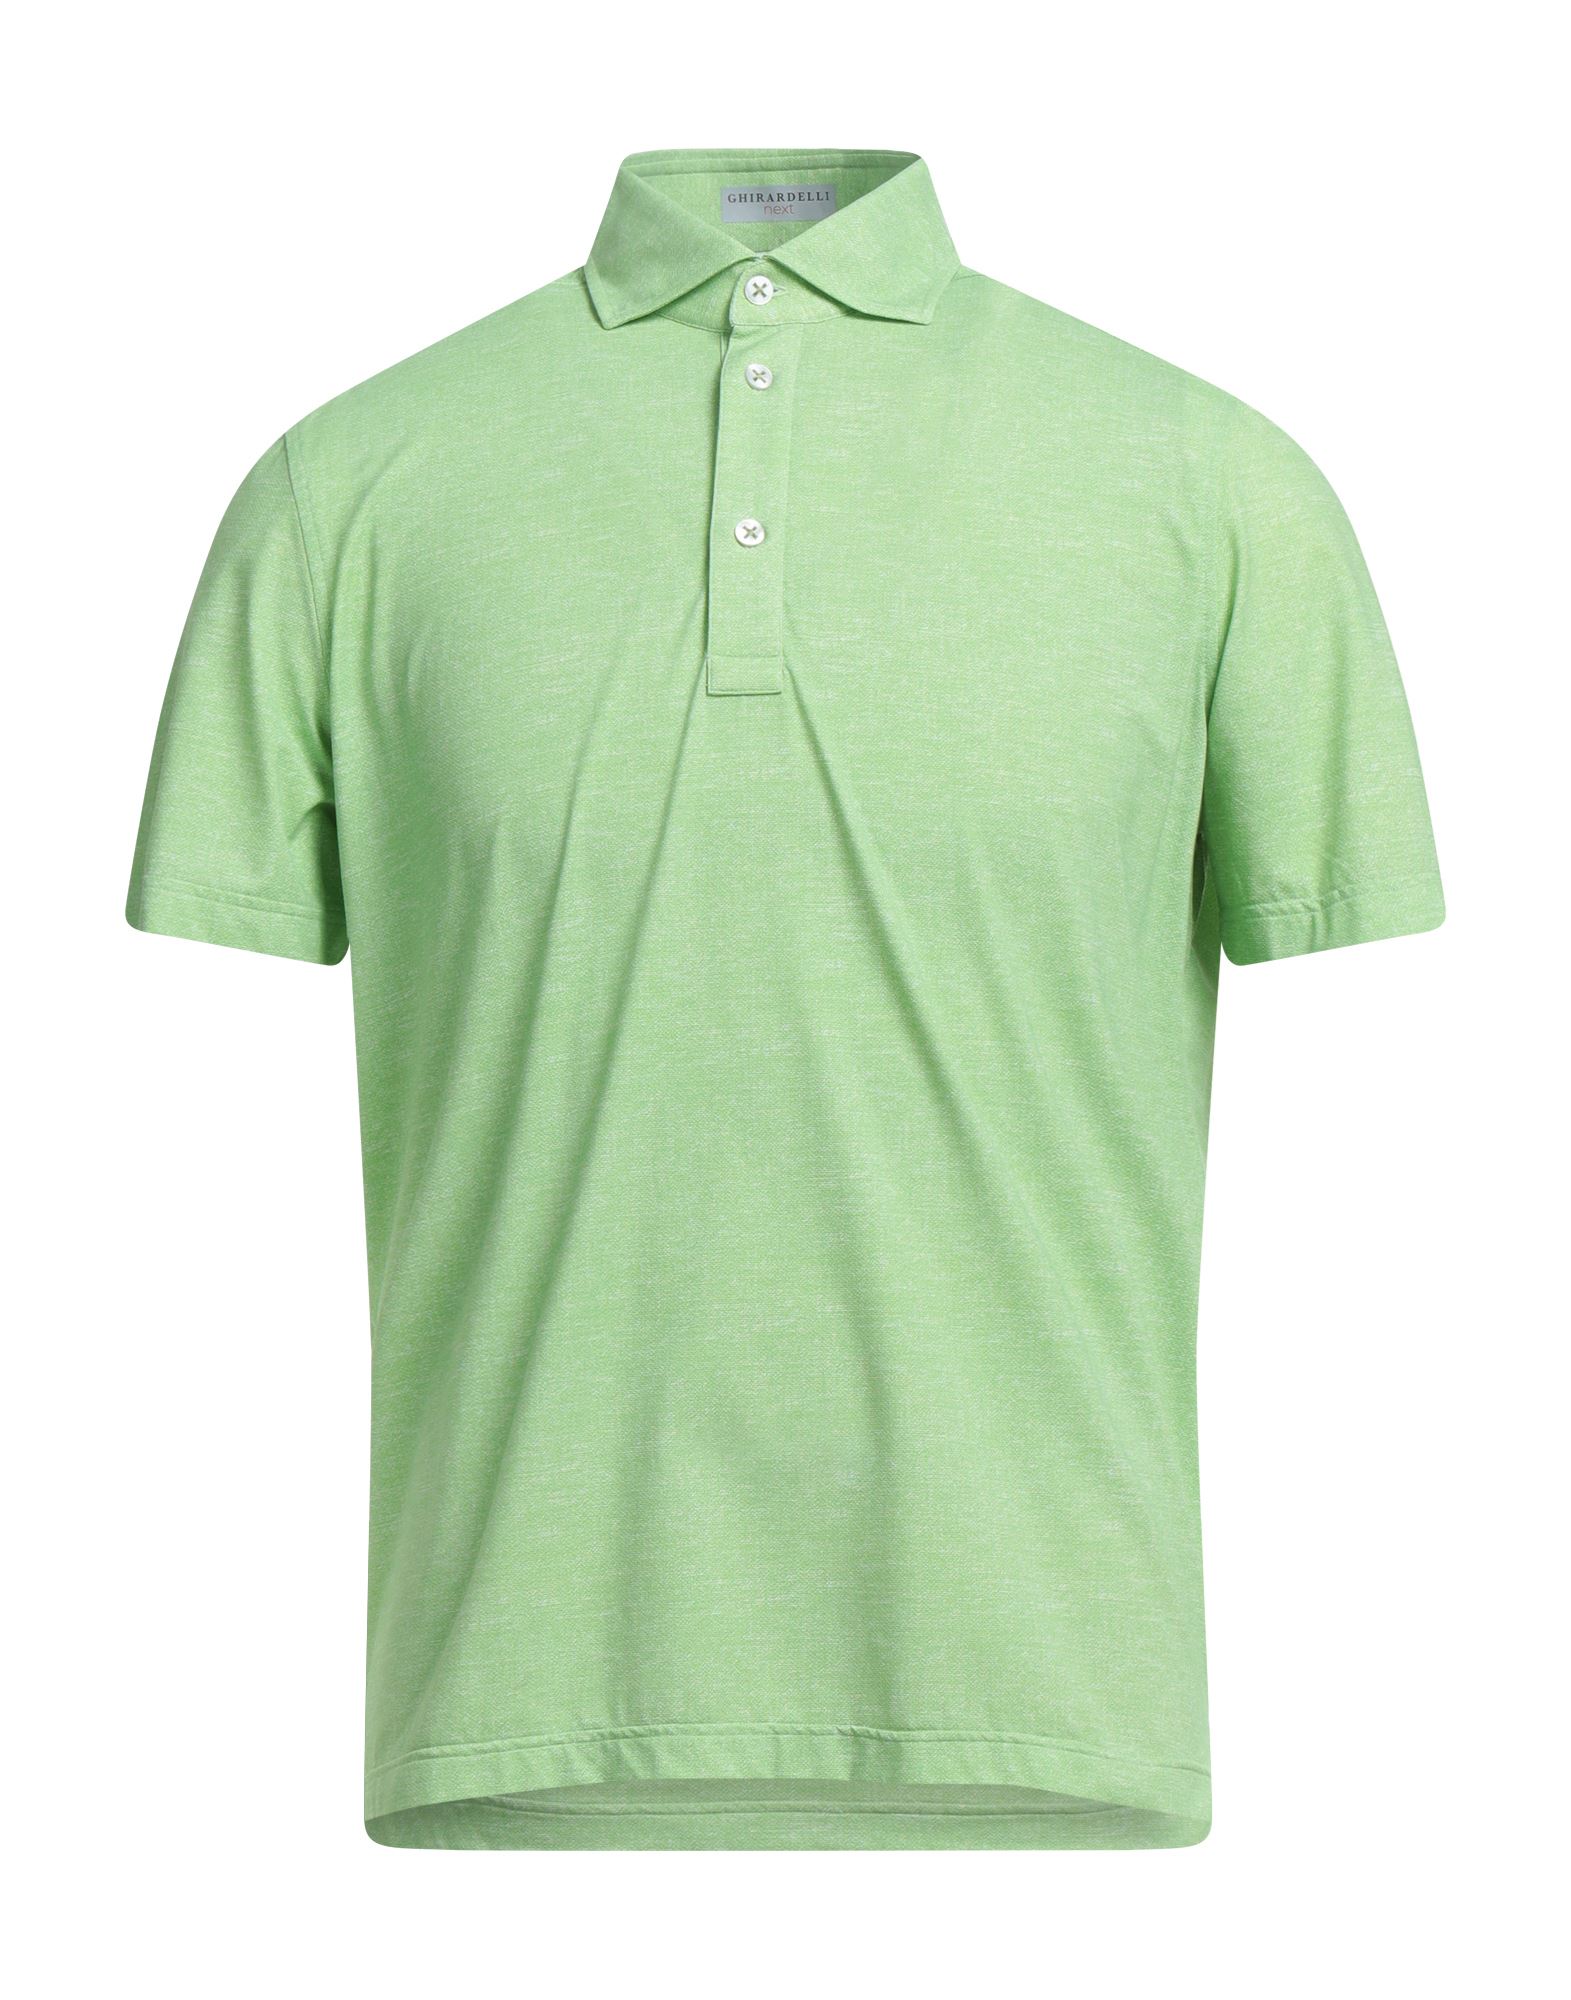 Ghirardelli Man Polo Shirt Light Green Size Xl Nylon, Elastane